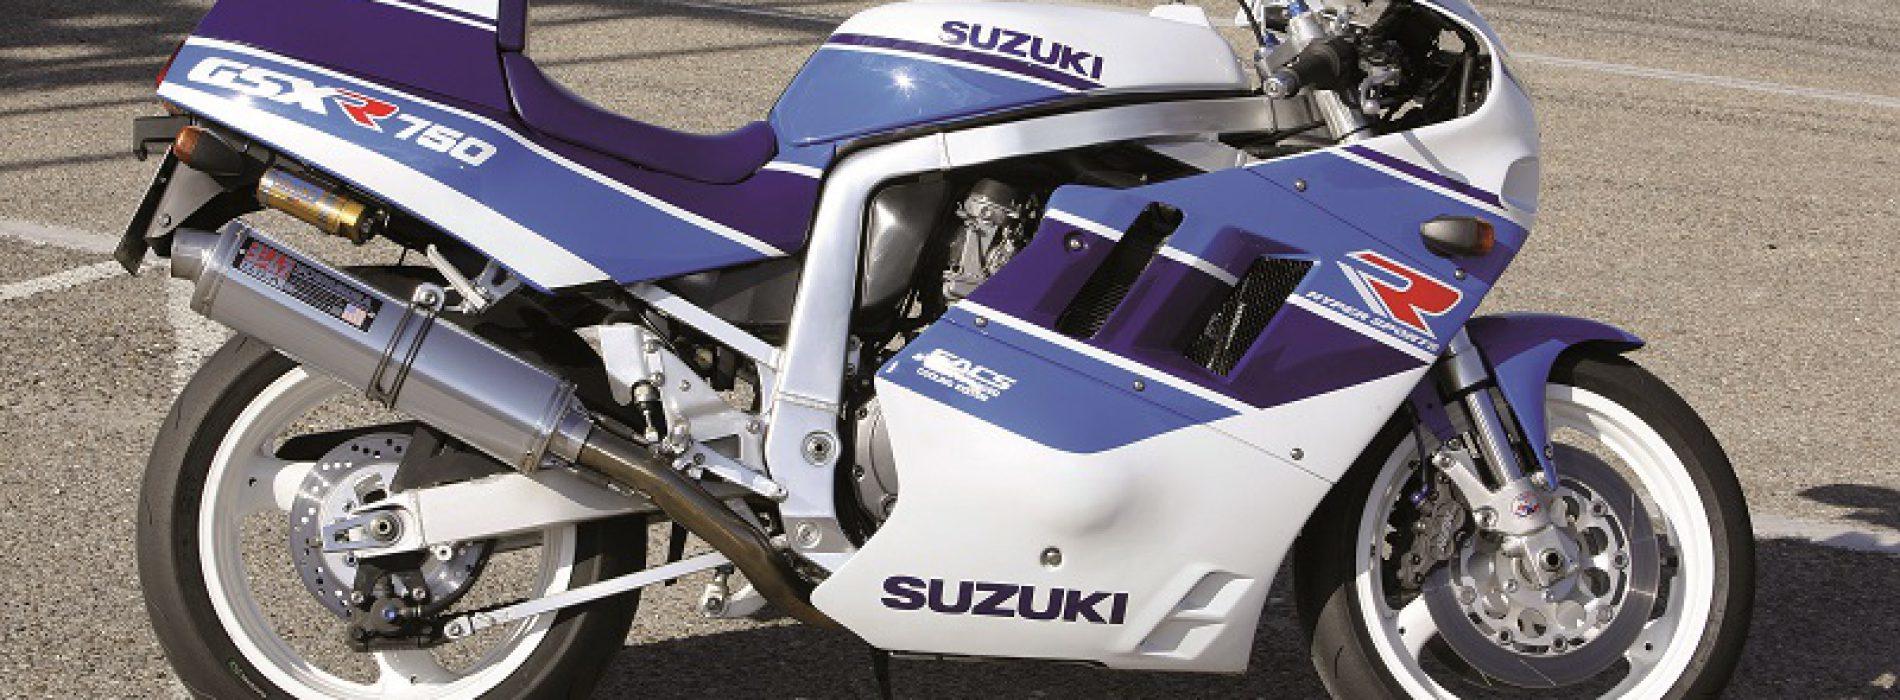 Suzuki GSX-R 750 1990